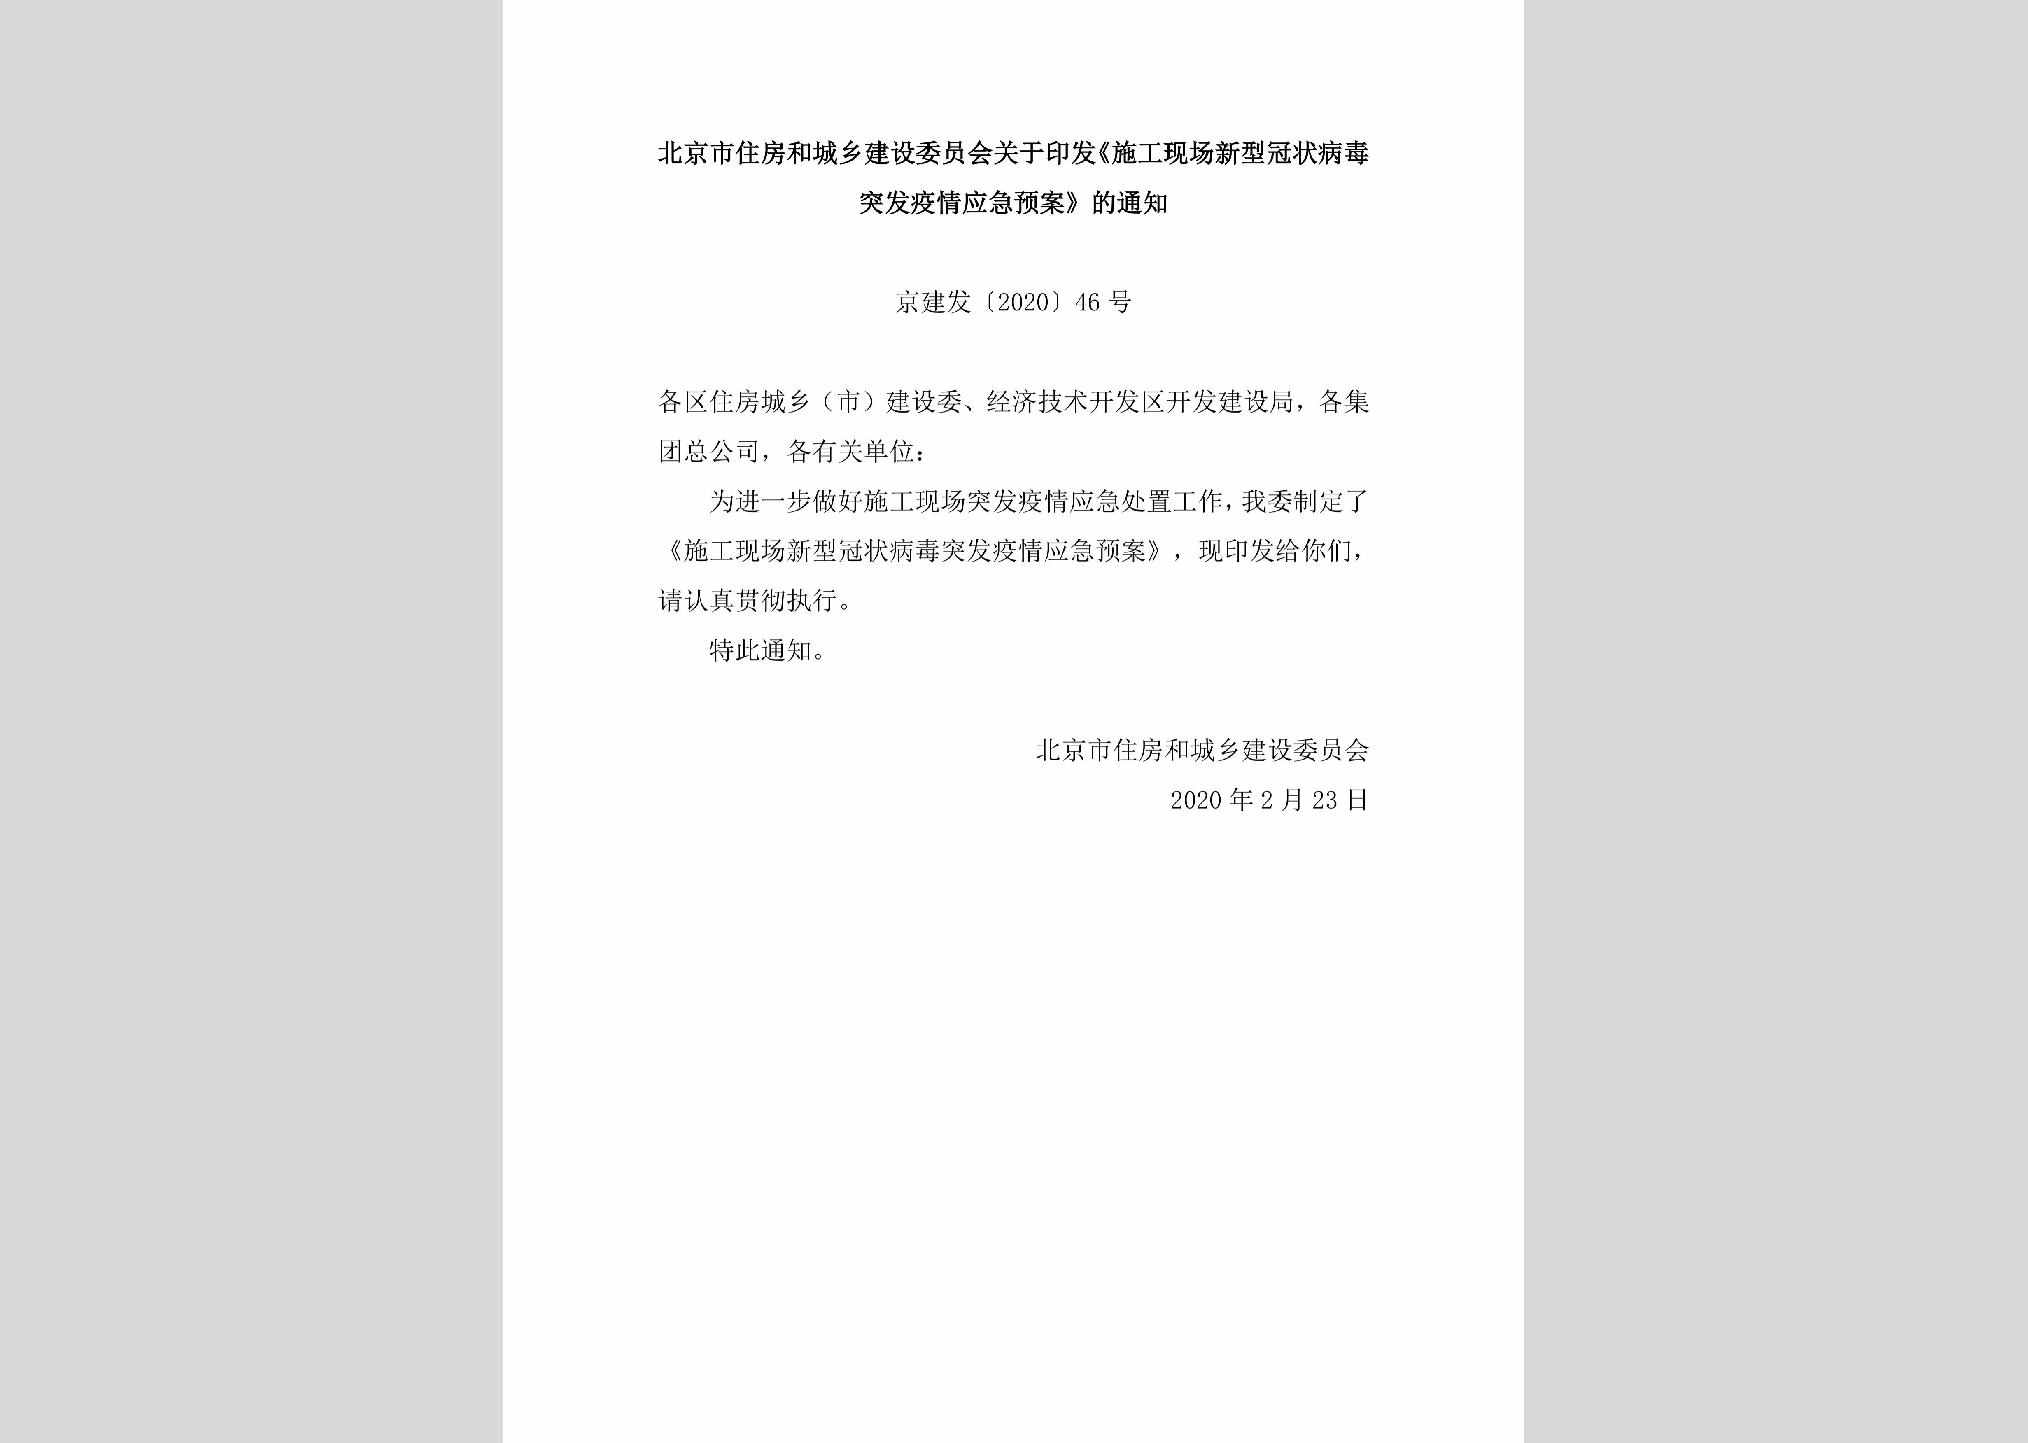 京建发[2020]46号：北京市住房和城乡建设委员会关于印发《施工现场新型冠状病毒突发疫情应急预案》的通知